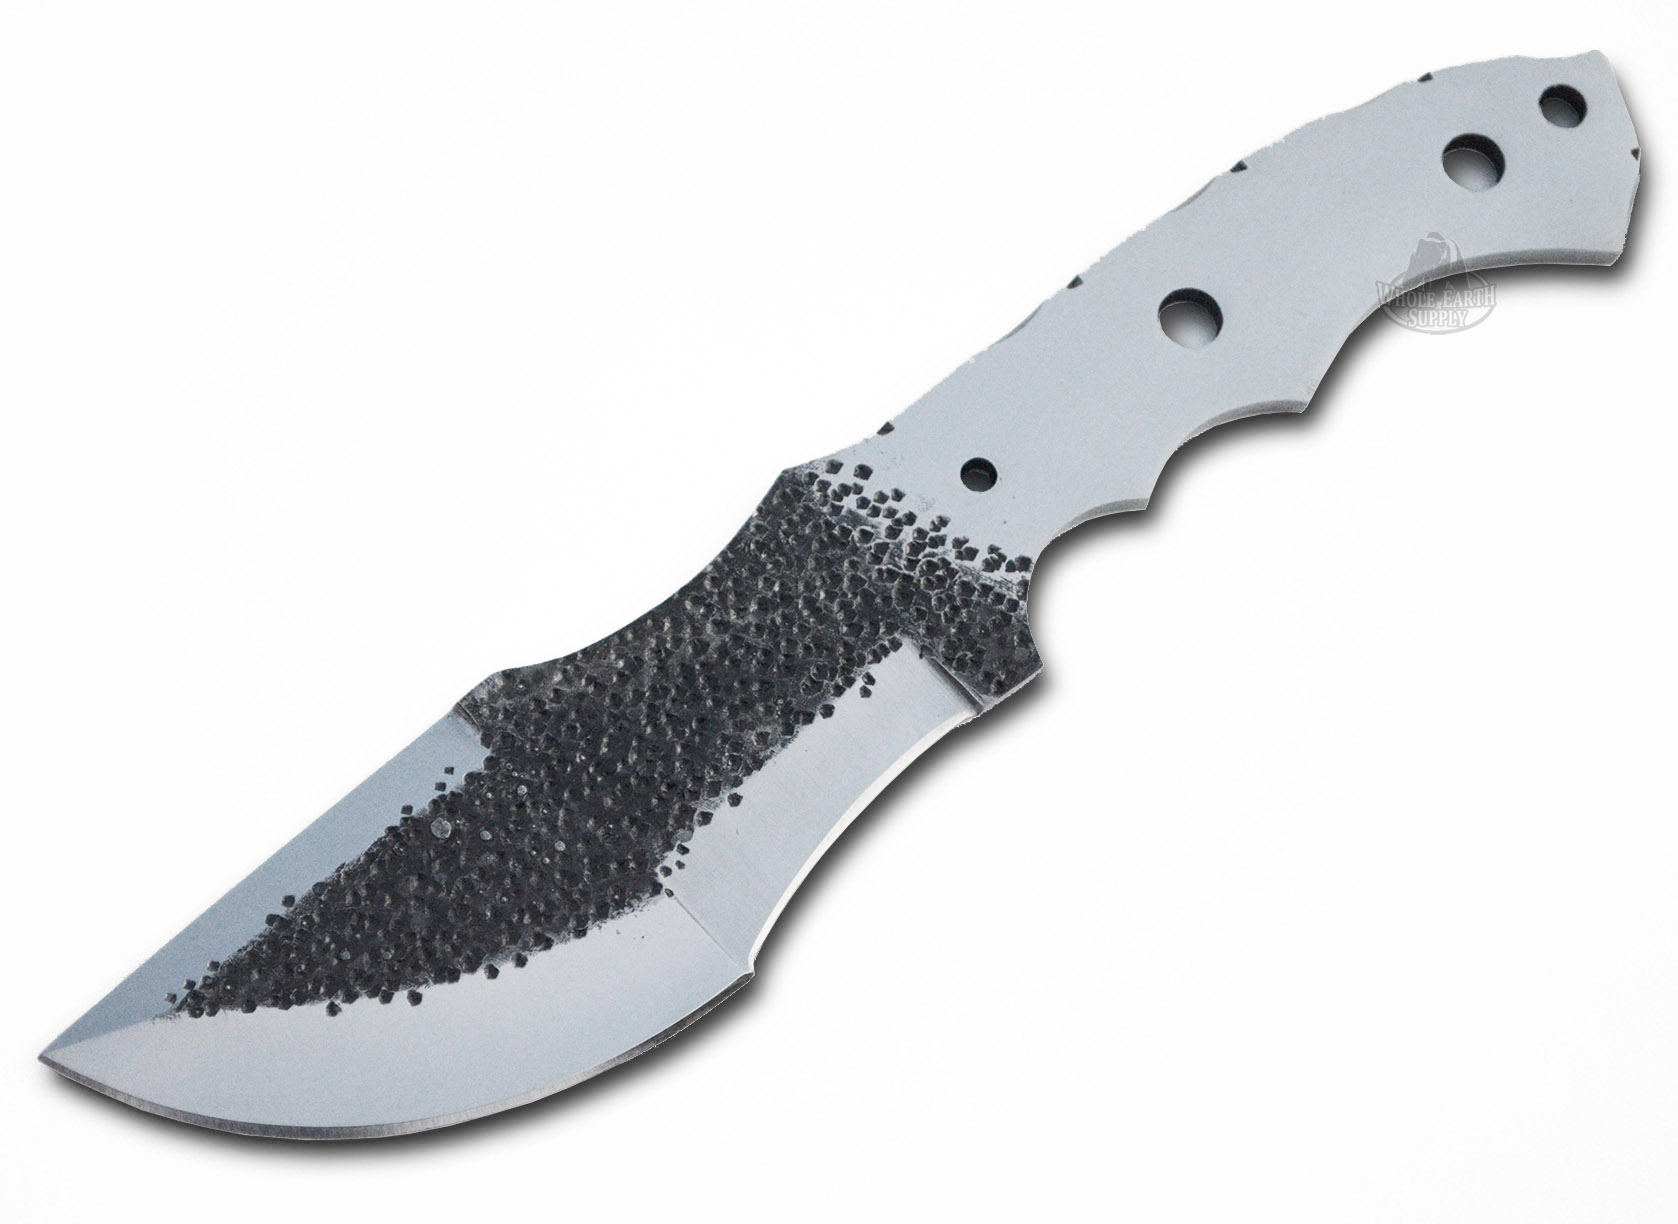 Hammered D-2 Steel Tracker Knife Making Blank Blade Hunting Skinning Skinner D2 Knives